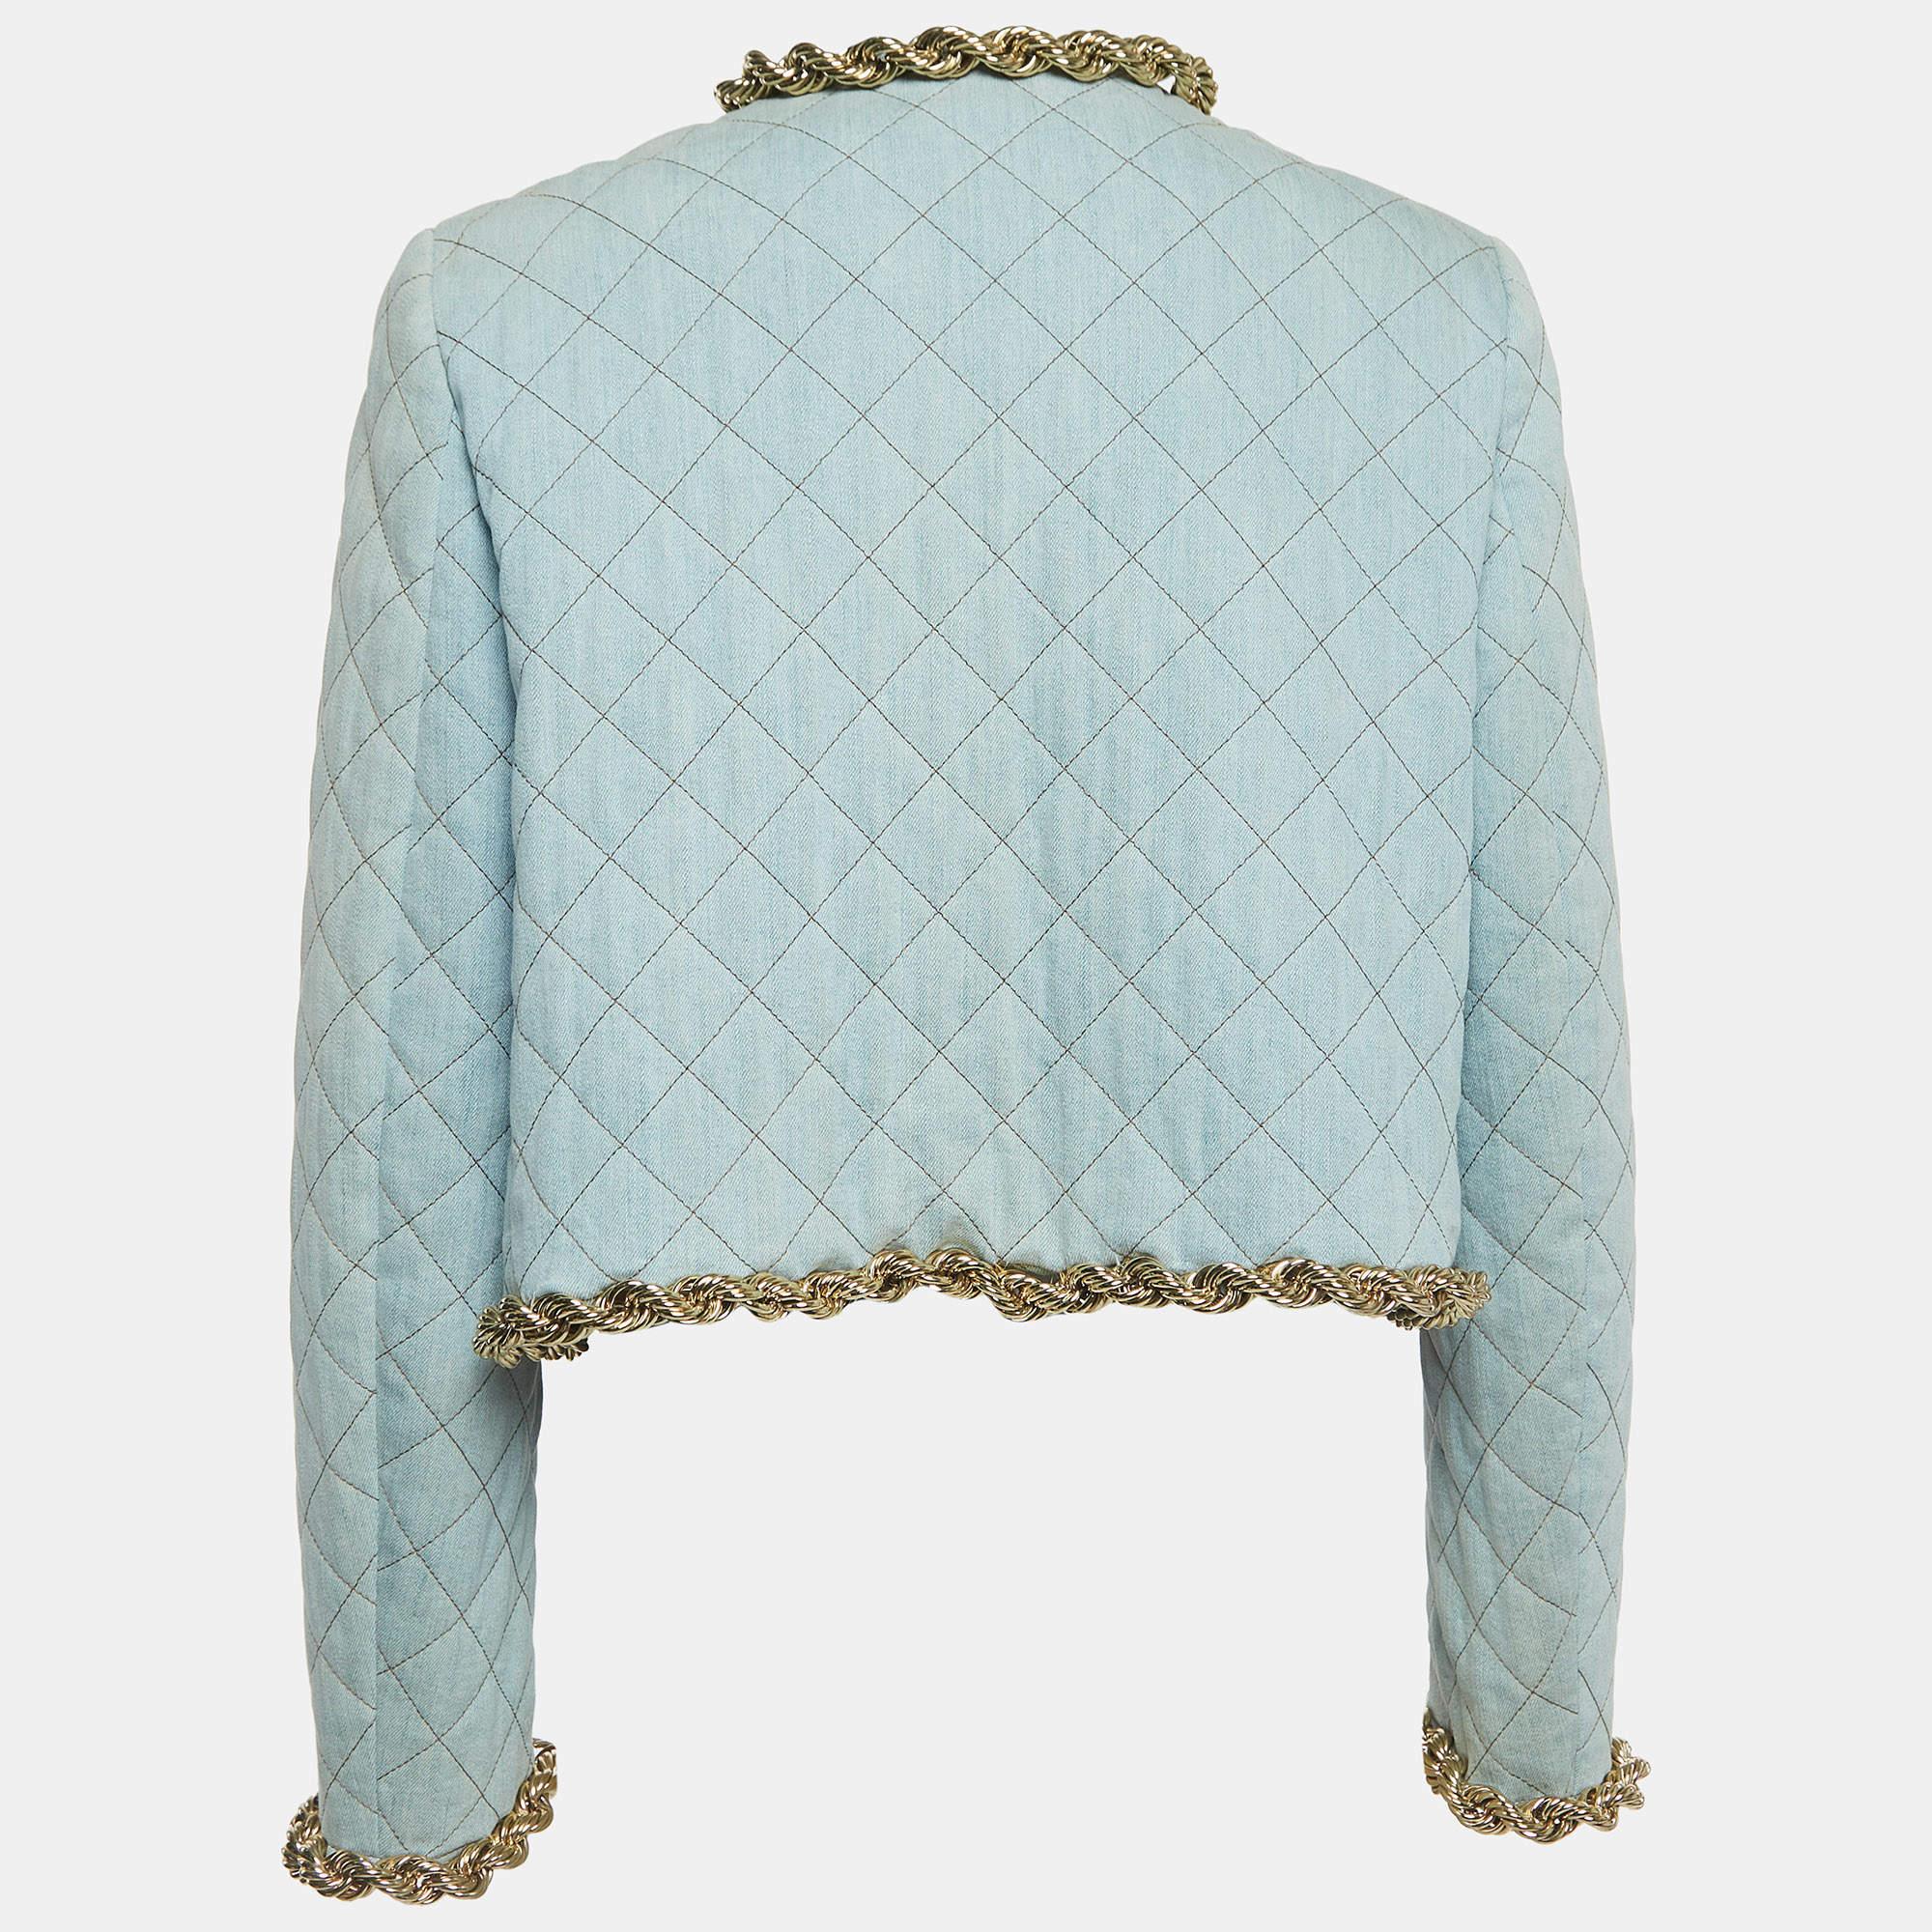 Ajoutez une dose supplémentaire de style à votre tenue avec cette veste très tendance de Moschino Couture. Fabriqué à partir de matériaux de qualité, il incarne une ambiance contemporaine et regorge de caractéristiques fonctionnelles.

